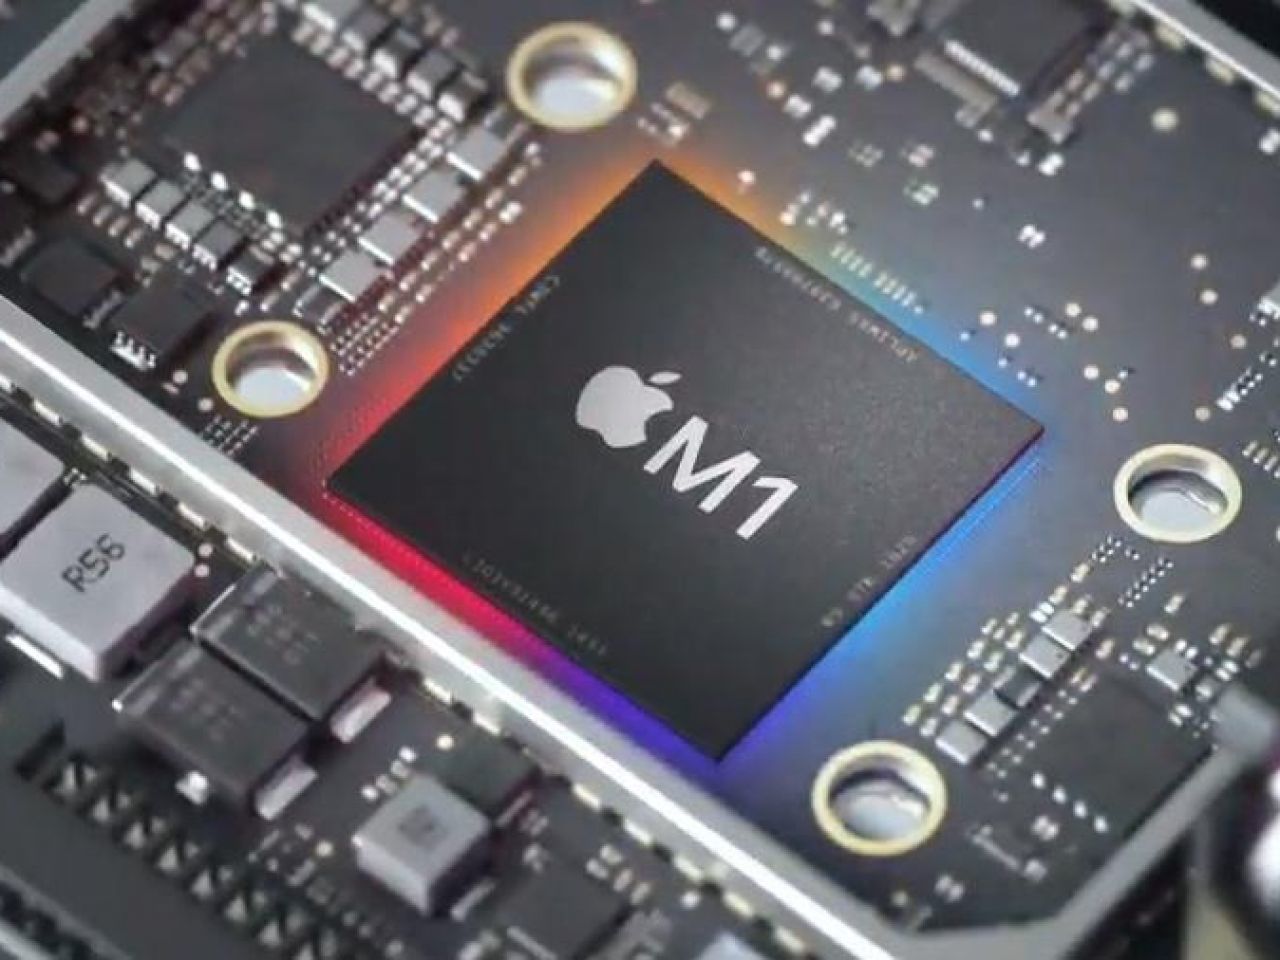 Appleシリコン「M1」と新型Mac登場--今分かっていること